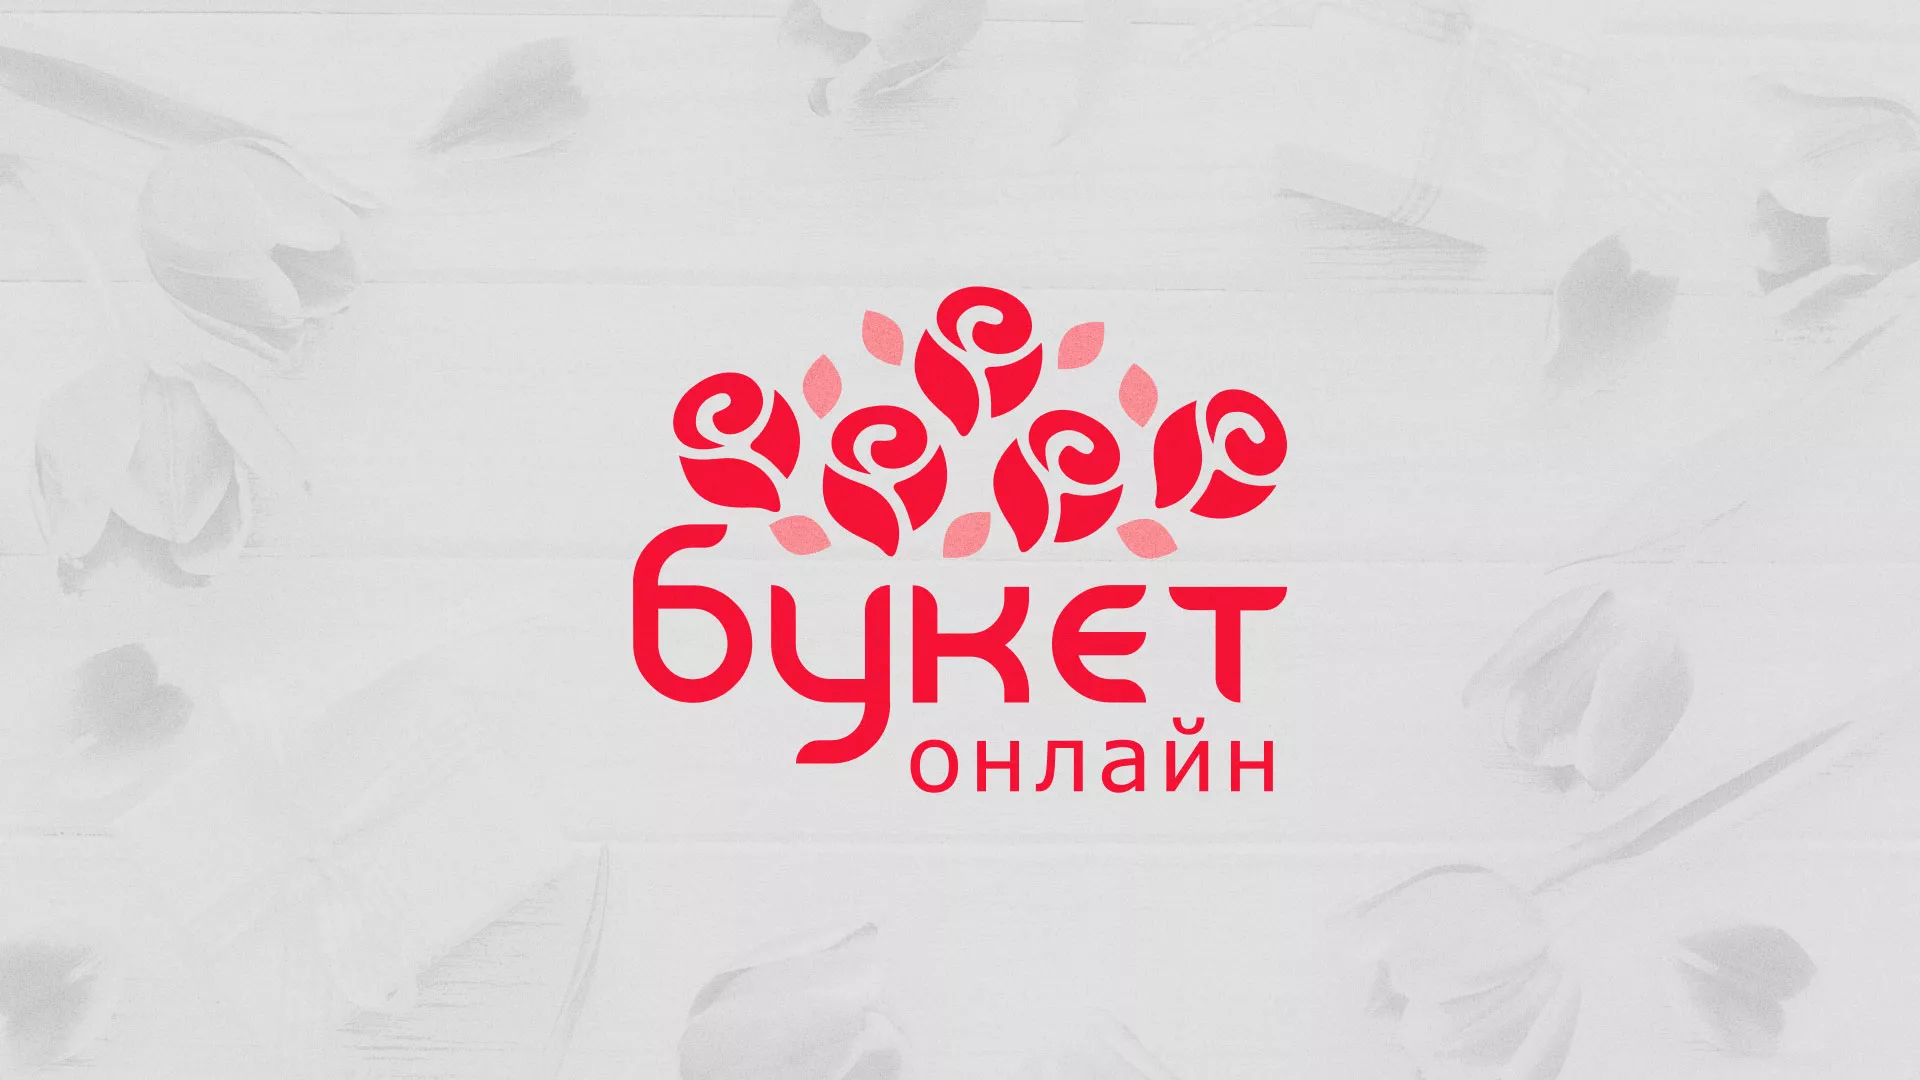 Создание интернет-магазина «Букет-онлайн» по цветам в Среднеуральске